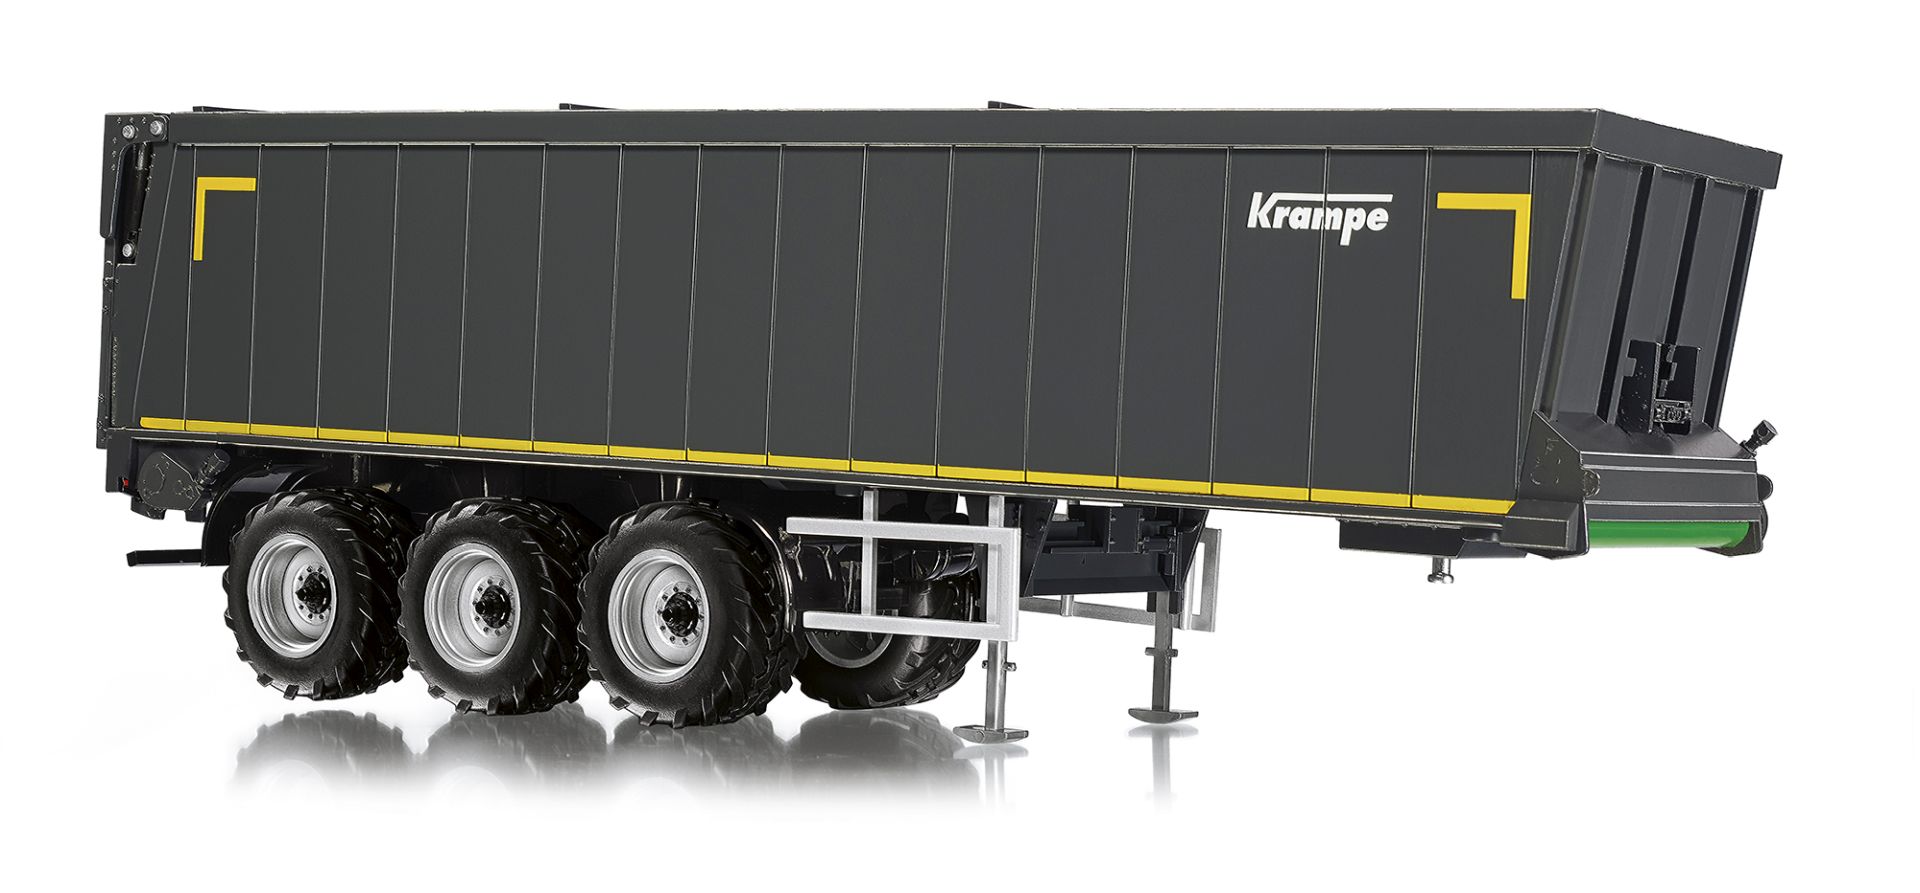 Wiking 077658 - Krampe Rollbandwagen SB II 30/1070 - grau